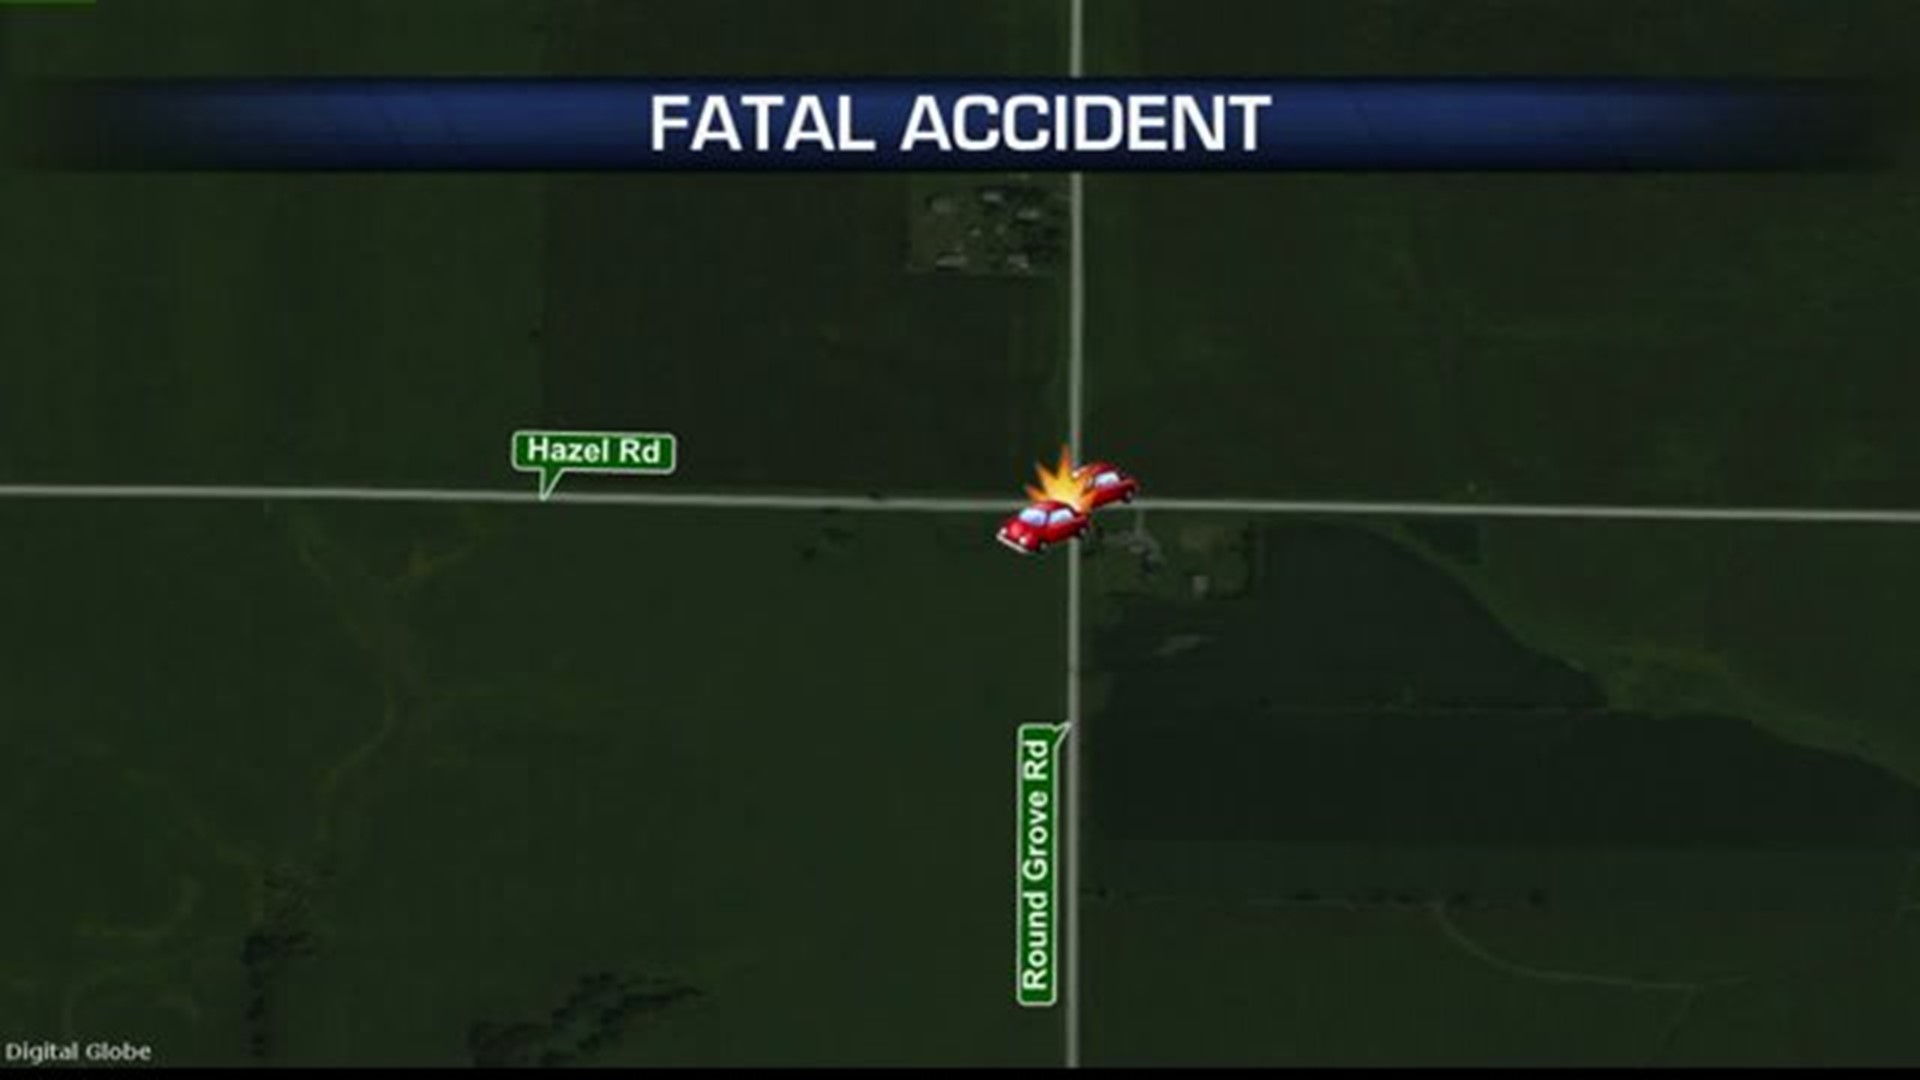 Fatal accident in Morrison, IL